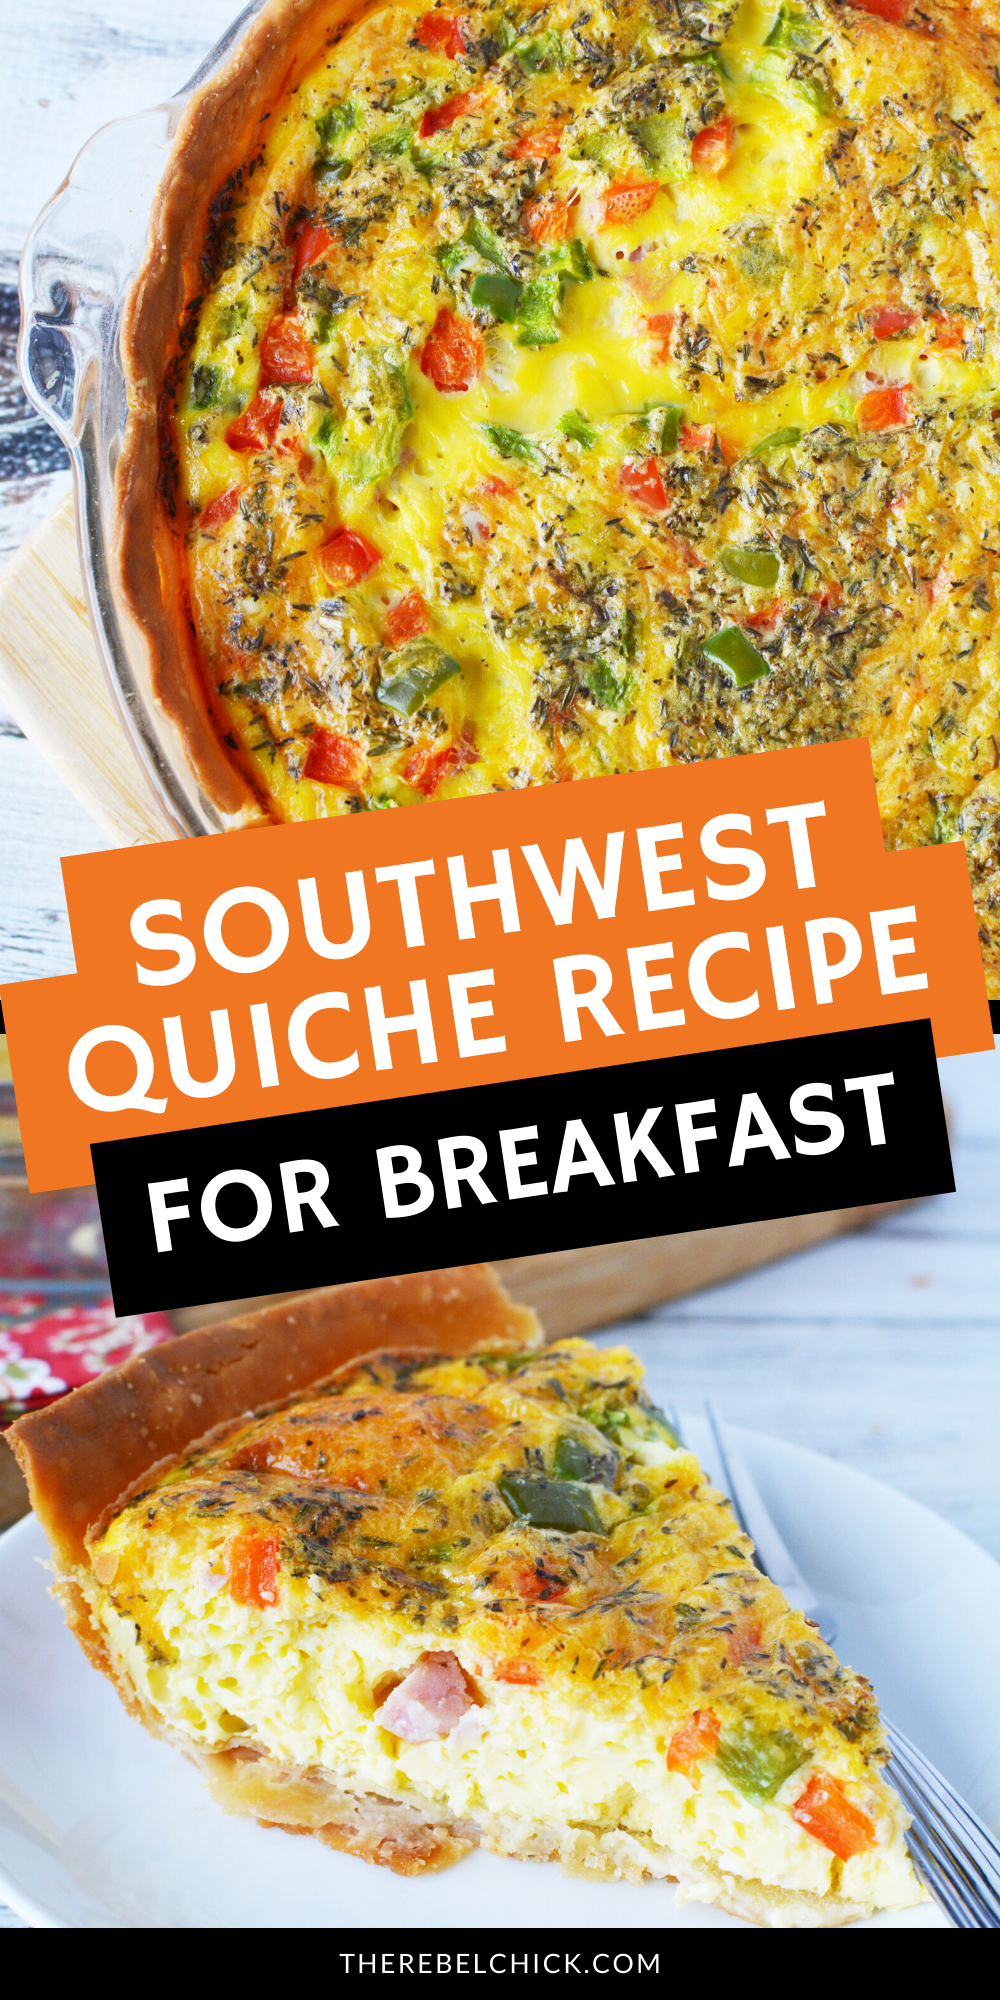 Southwest Quiche Recipe for Breakfast